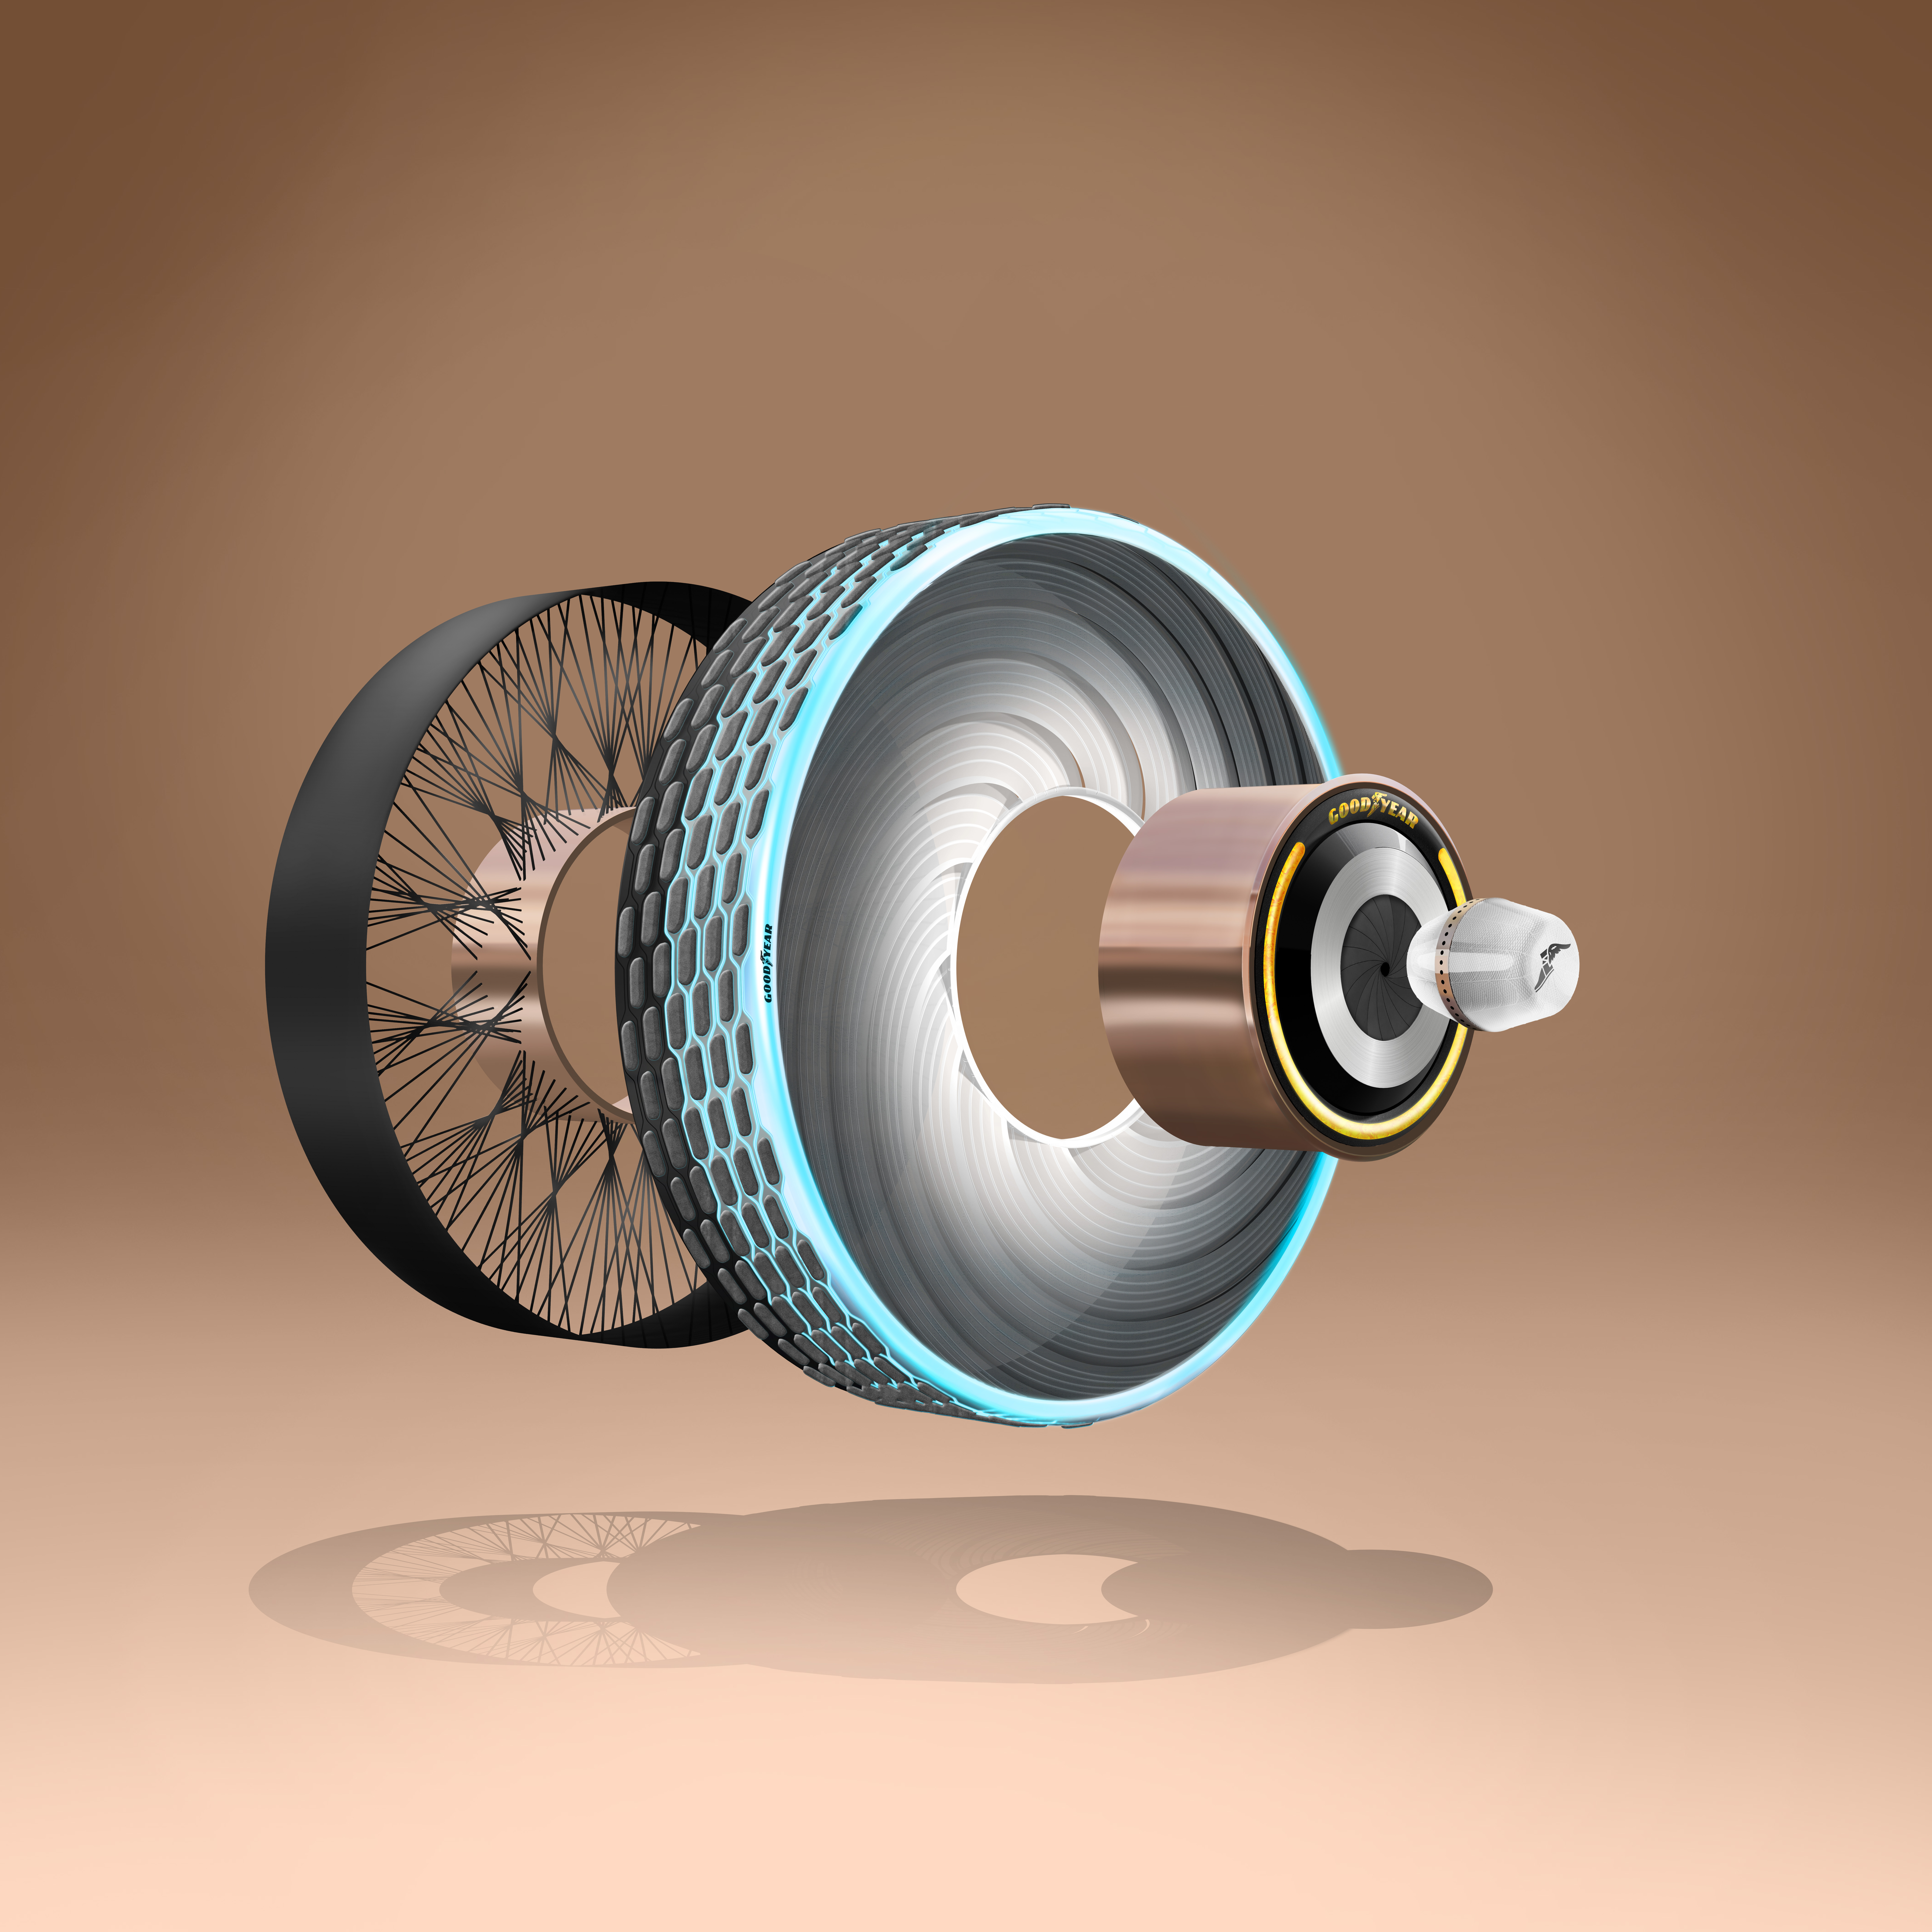 Goodyear разработала концептуальную самовосстанавливающуюся шину reCharge с настраиваемым составом протектора